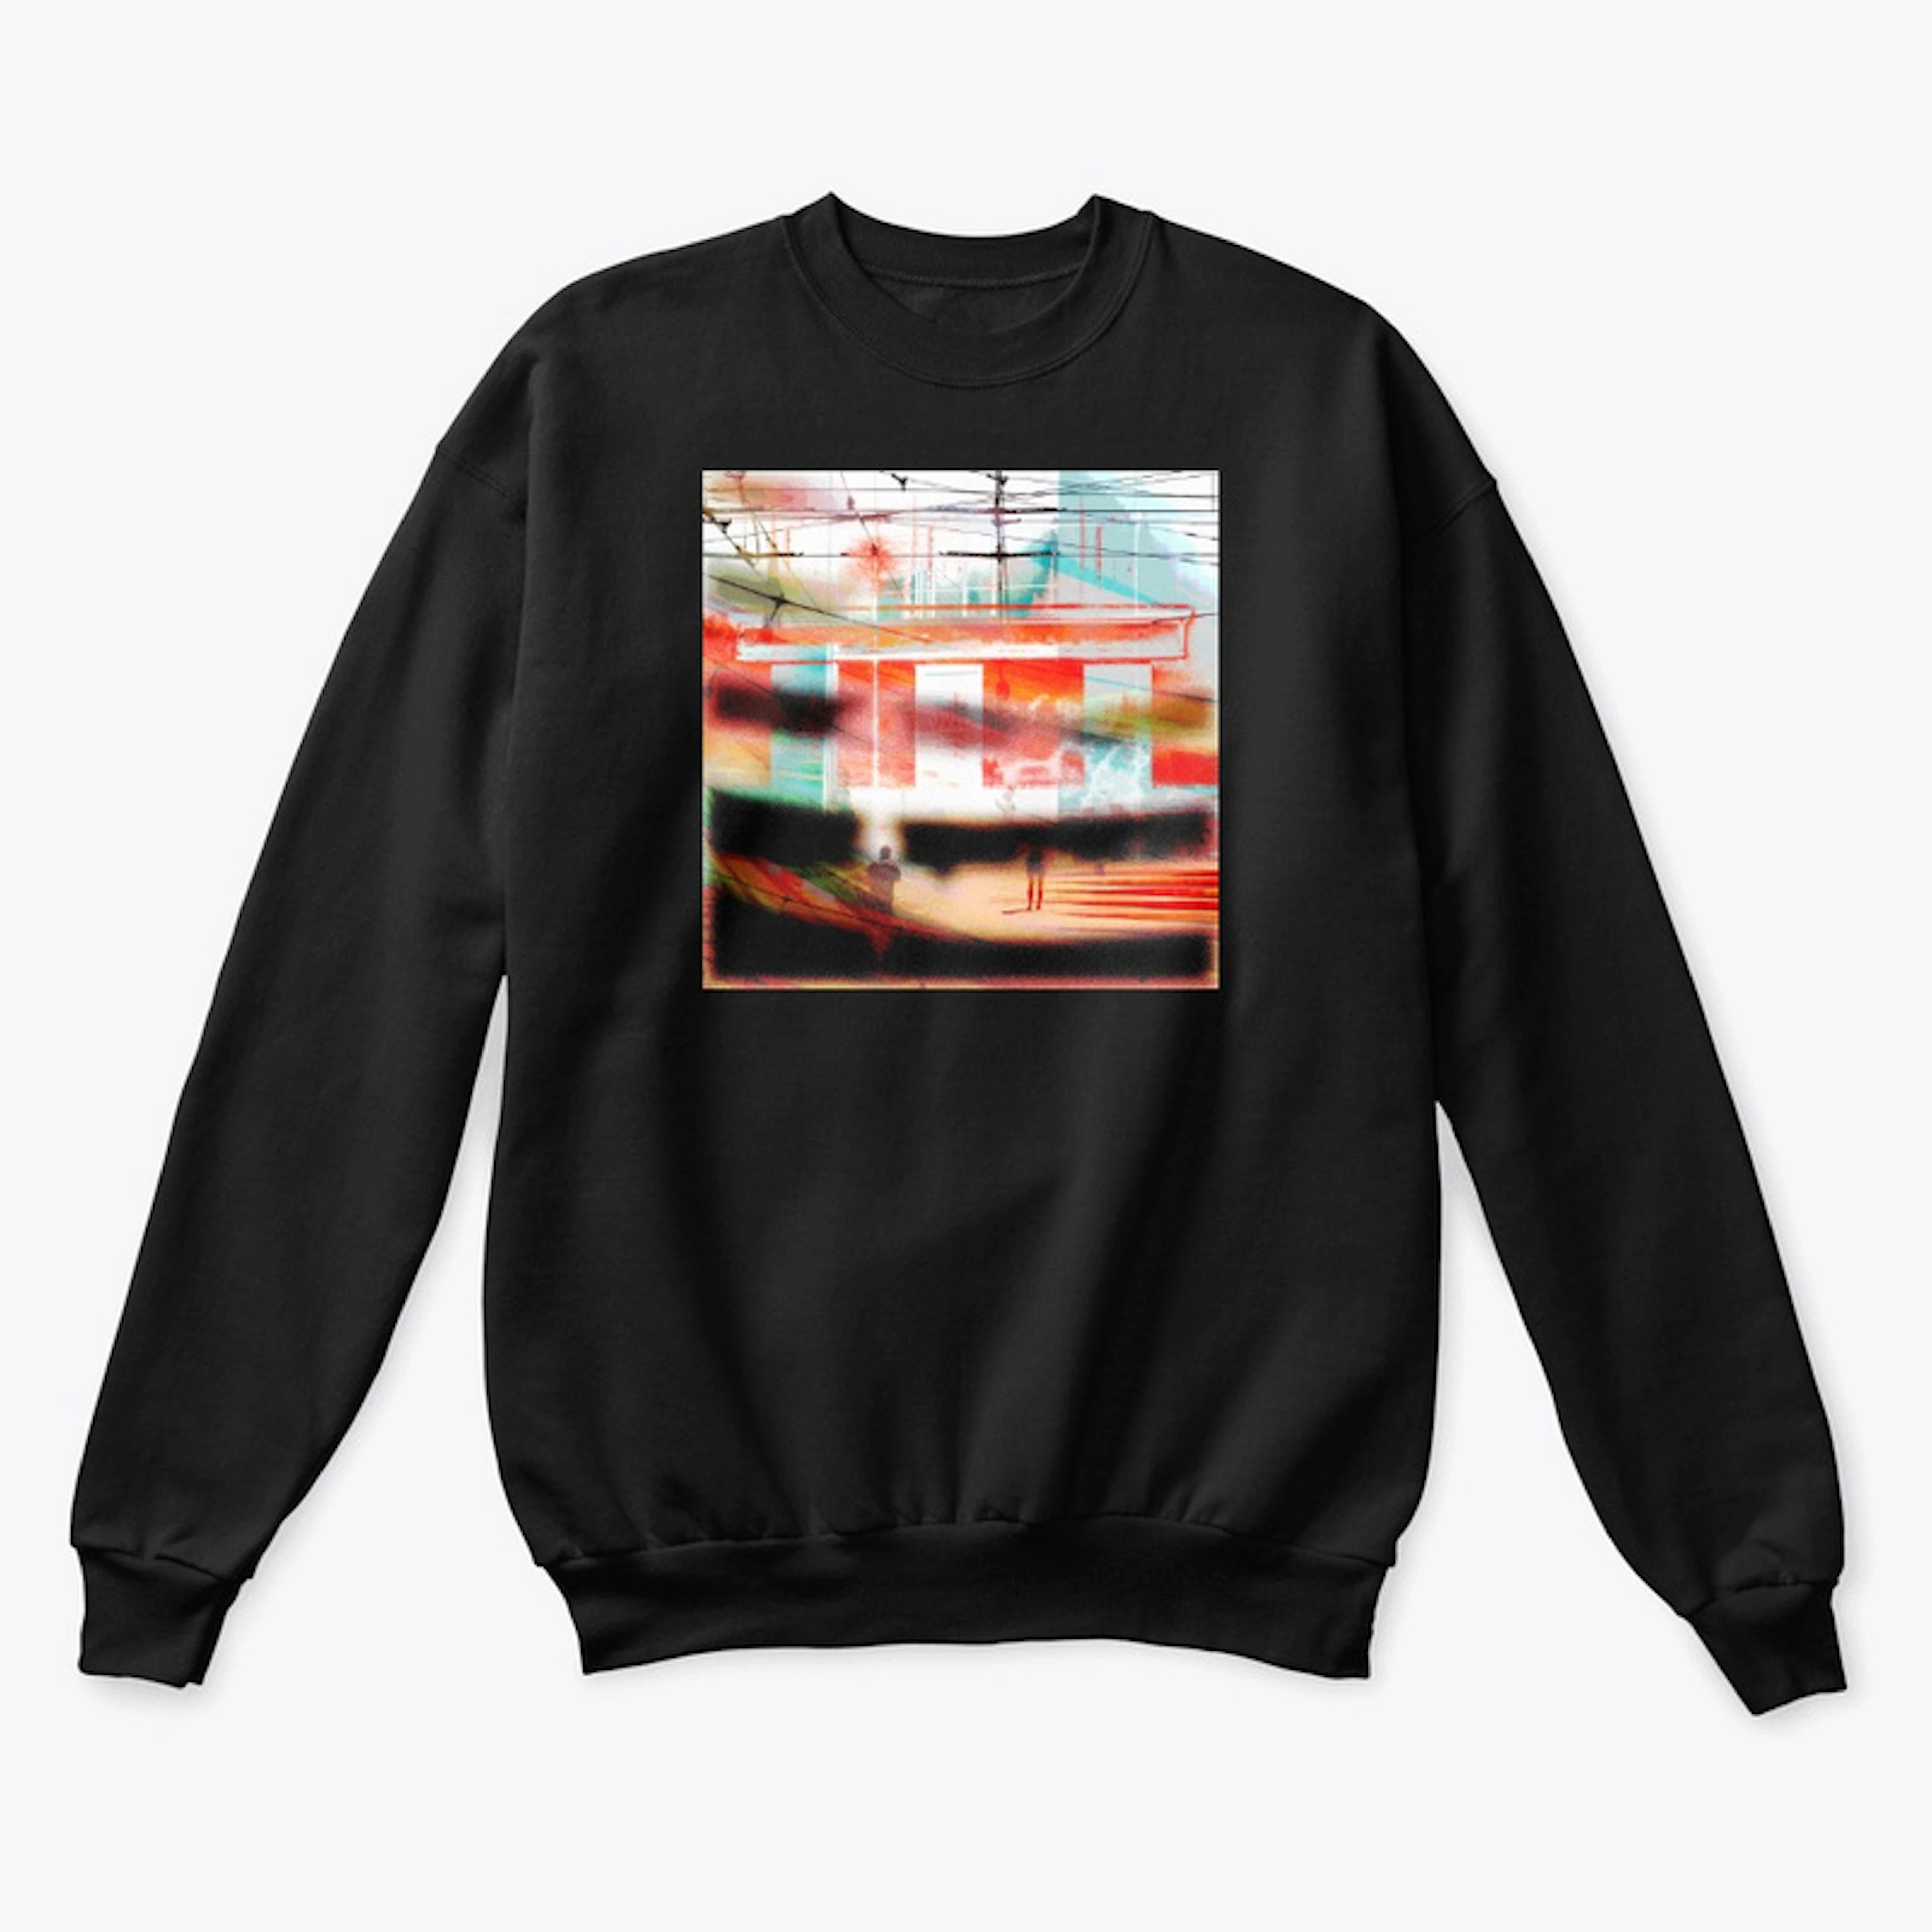 cool ass sweatshirt